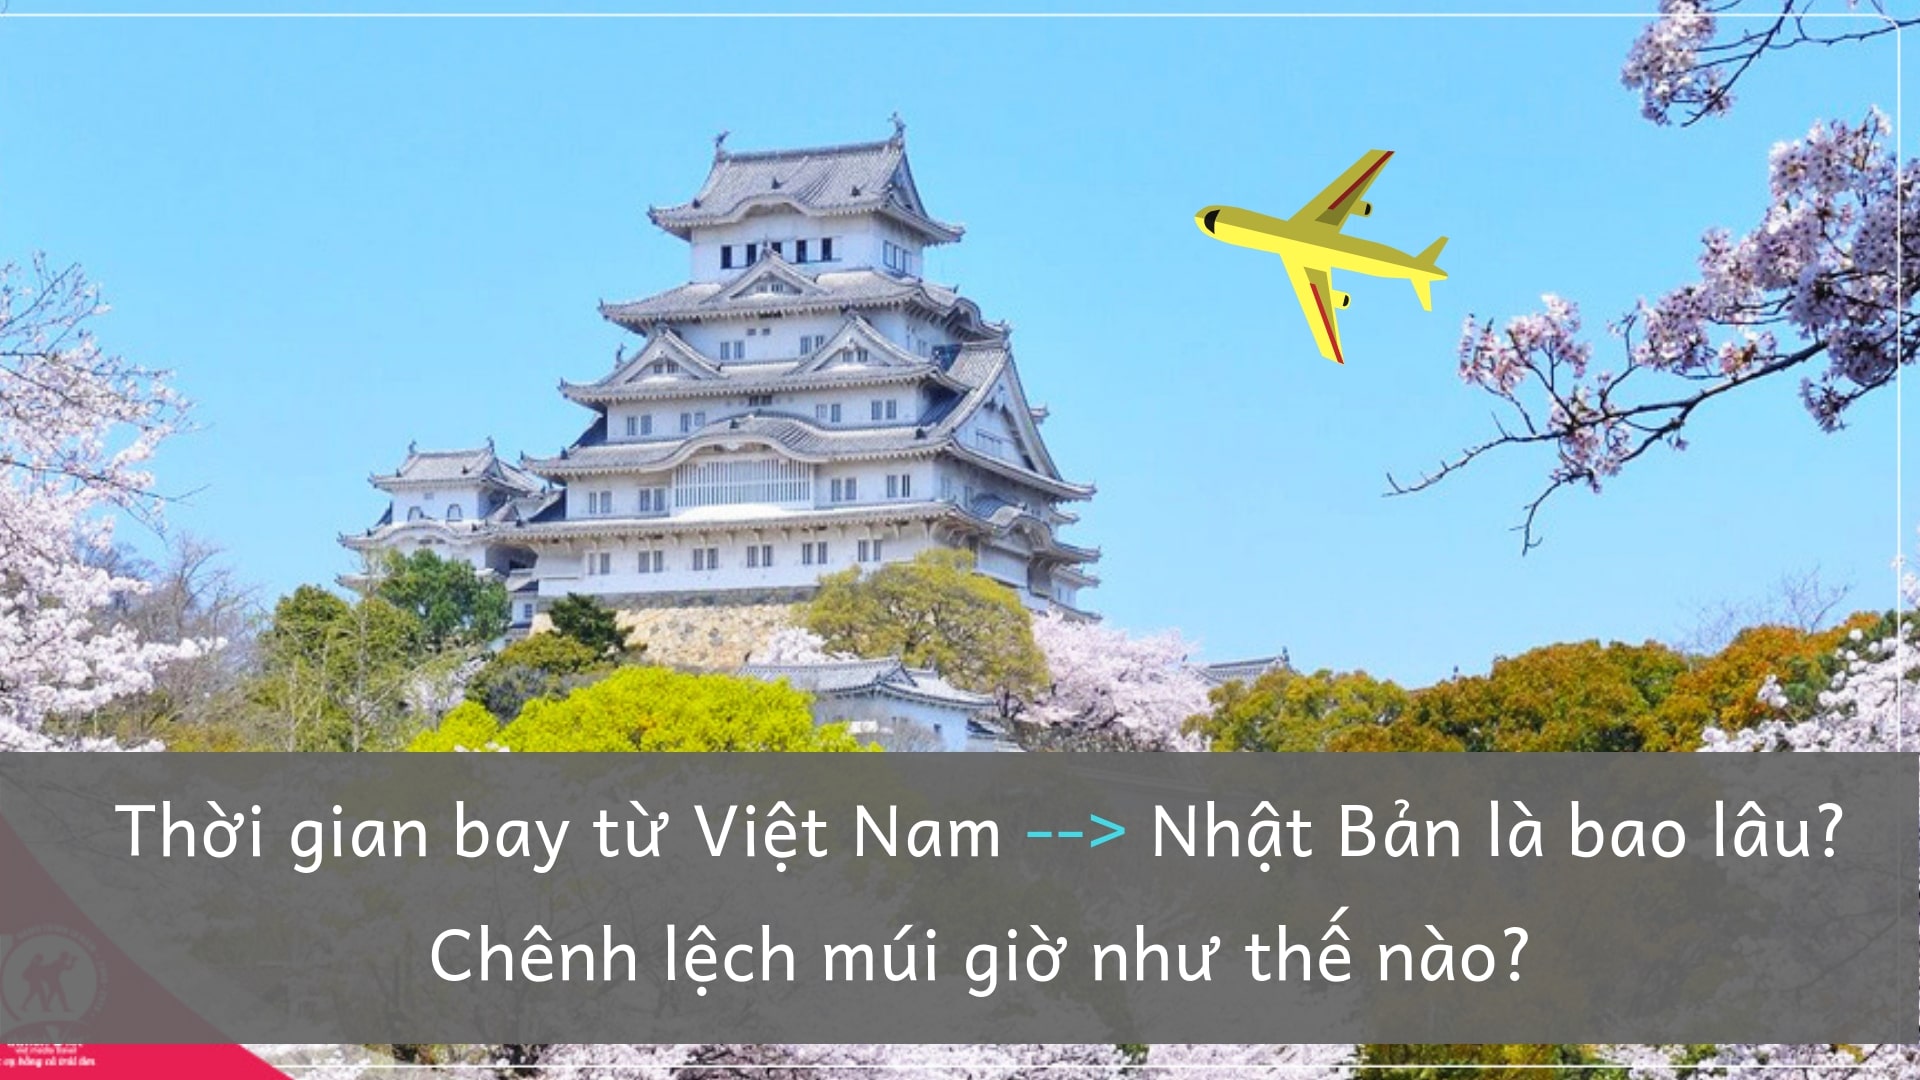 Thời gian bay từ Việt Nam sang Nhật Bản là bao lâu? Chênh lệch múi giờ Việt –Nhật như thế nào?